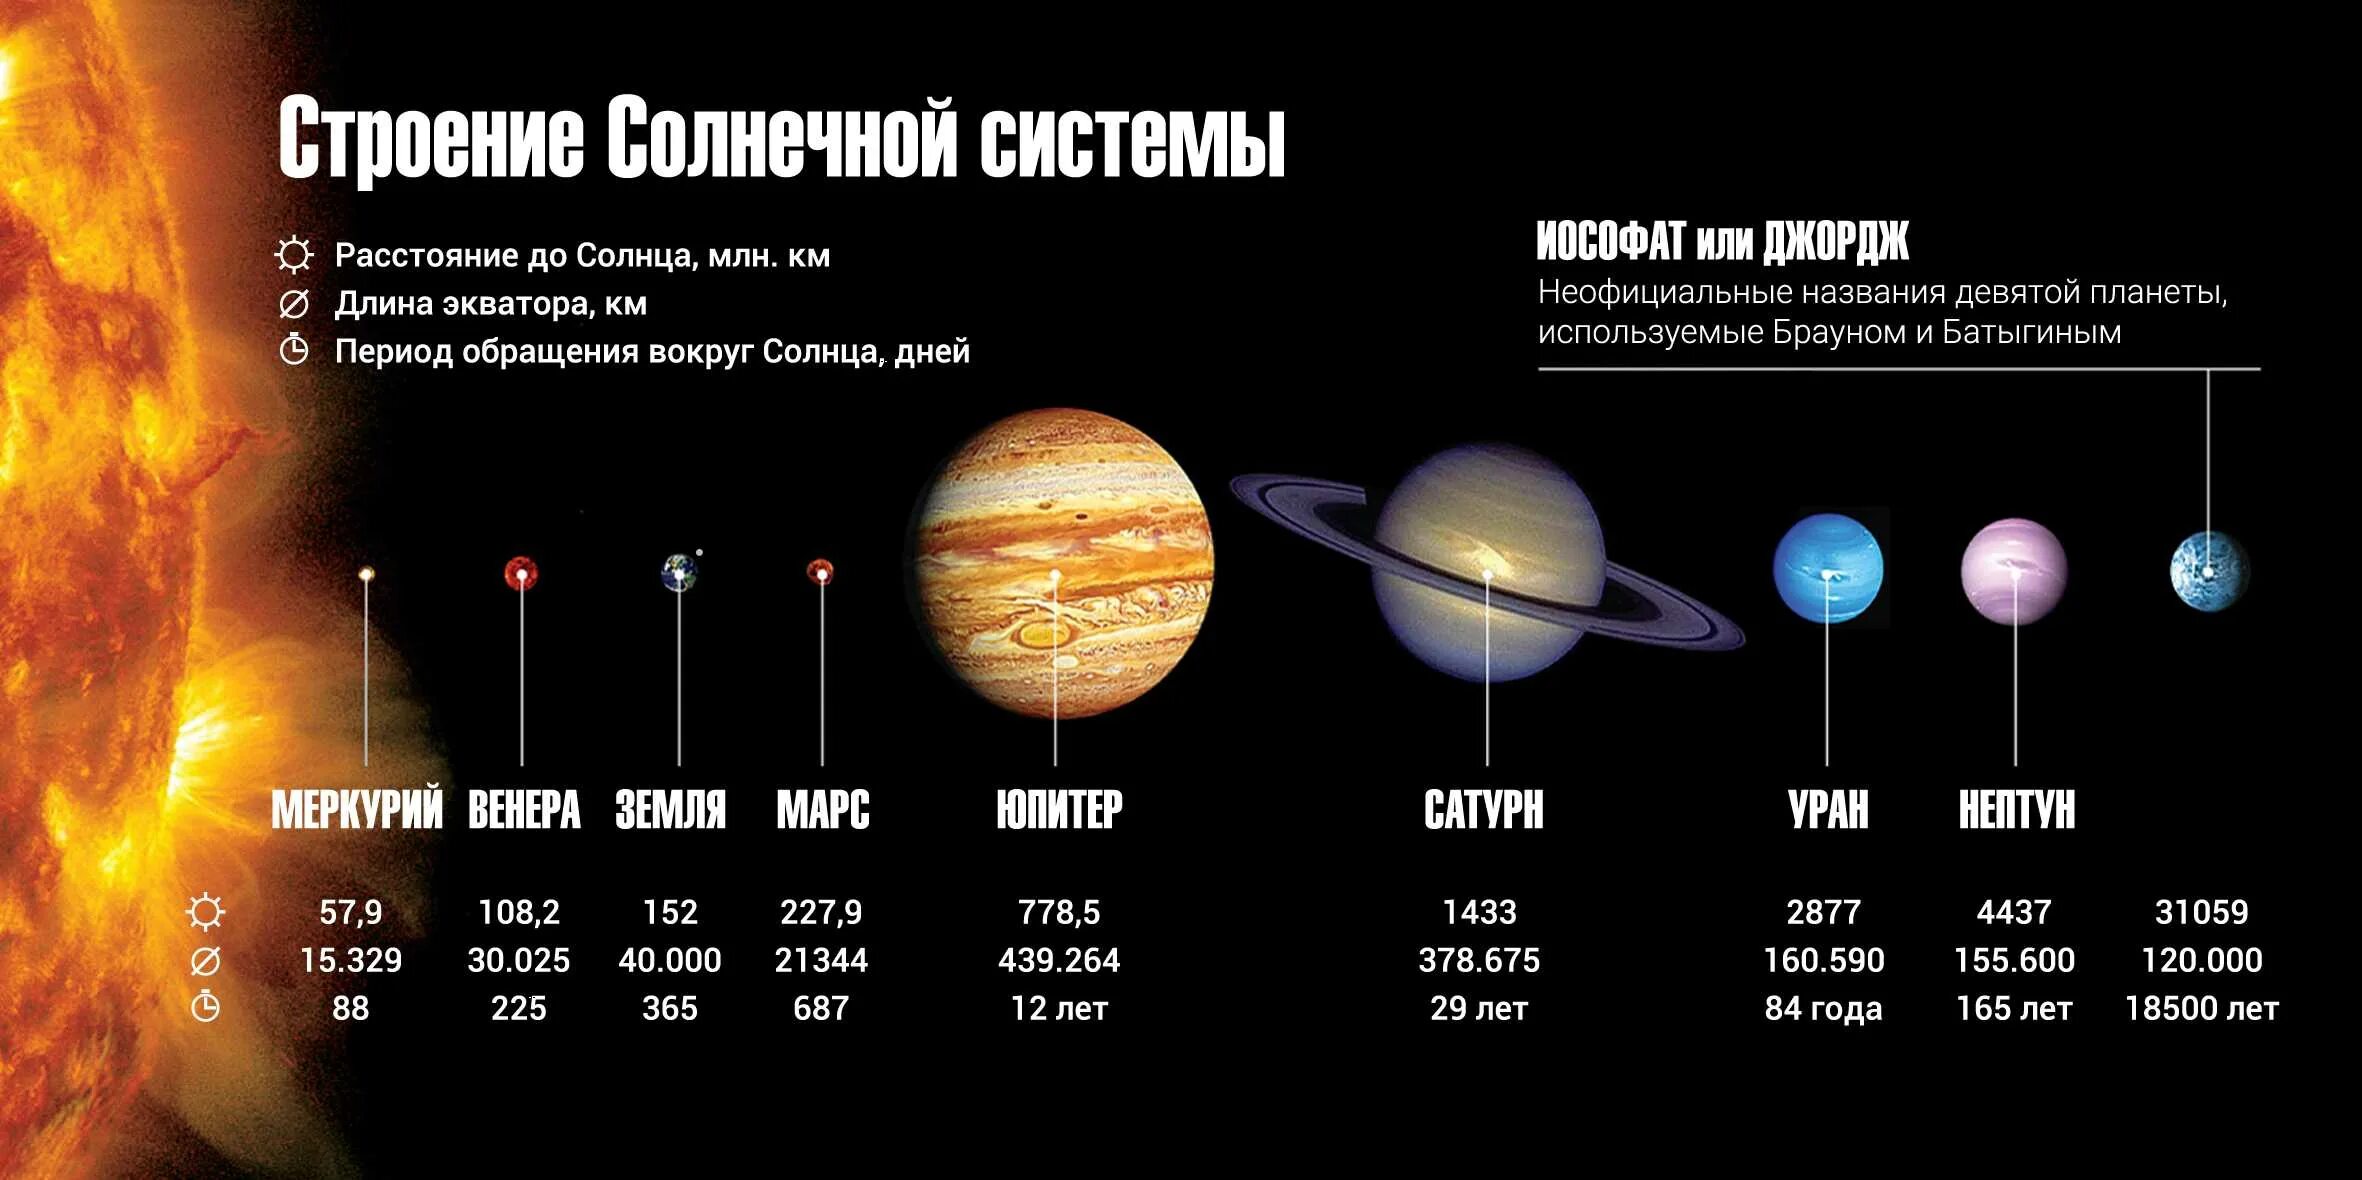 Расстояние до планет солнечной системы. Удалённость от солнца планет солнечной системы. Расстояние планет солнечной системы от солнца. Расстояние до солнца планет солнечной системы. Мера расстояния космических масштабов сканворд